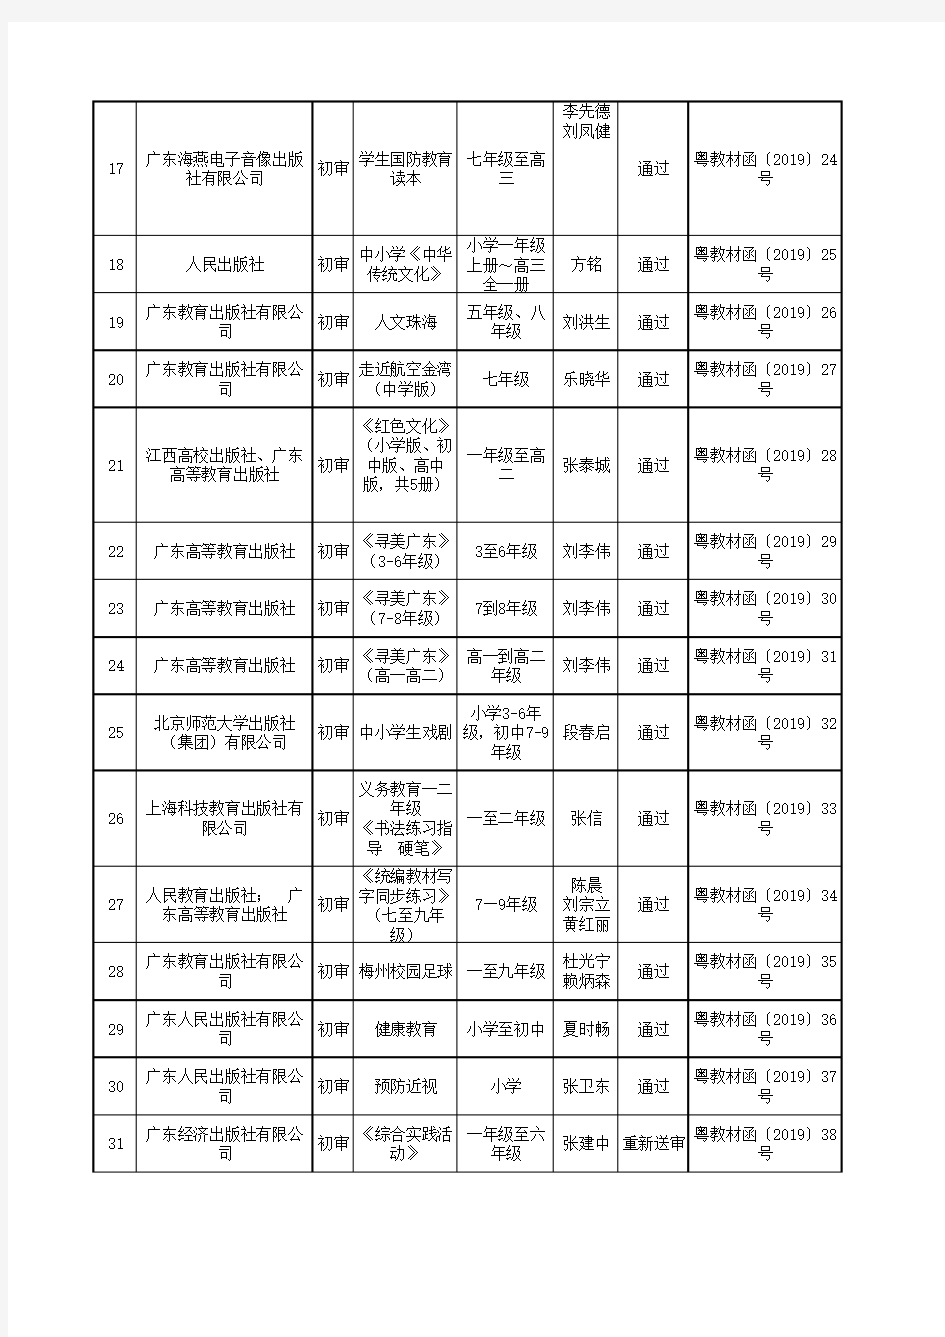 广东省2019年中小学地方课程教材审查结果公示